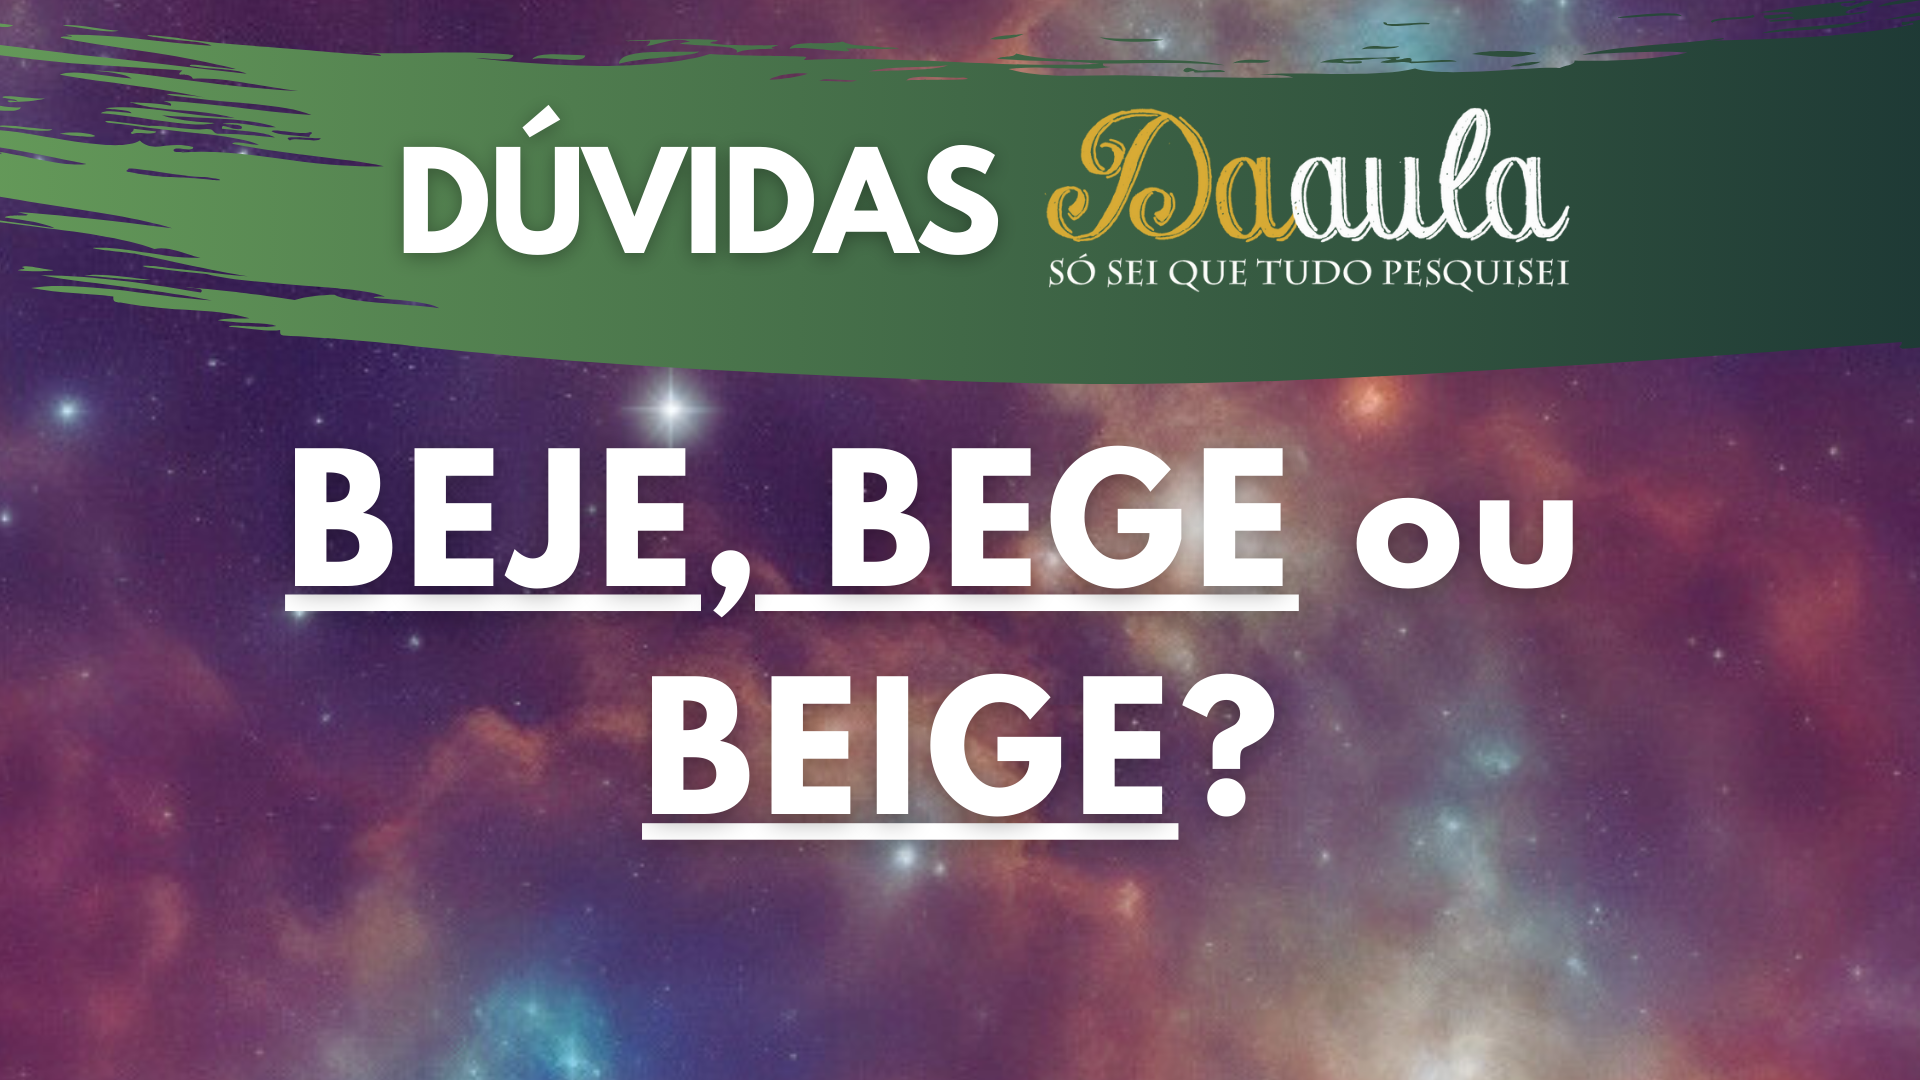 Qual a Forma Correta: Bege, Beje ou Beige?